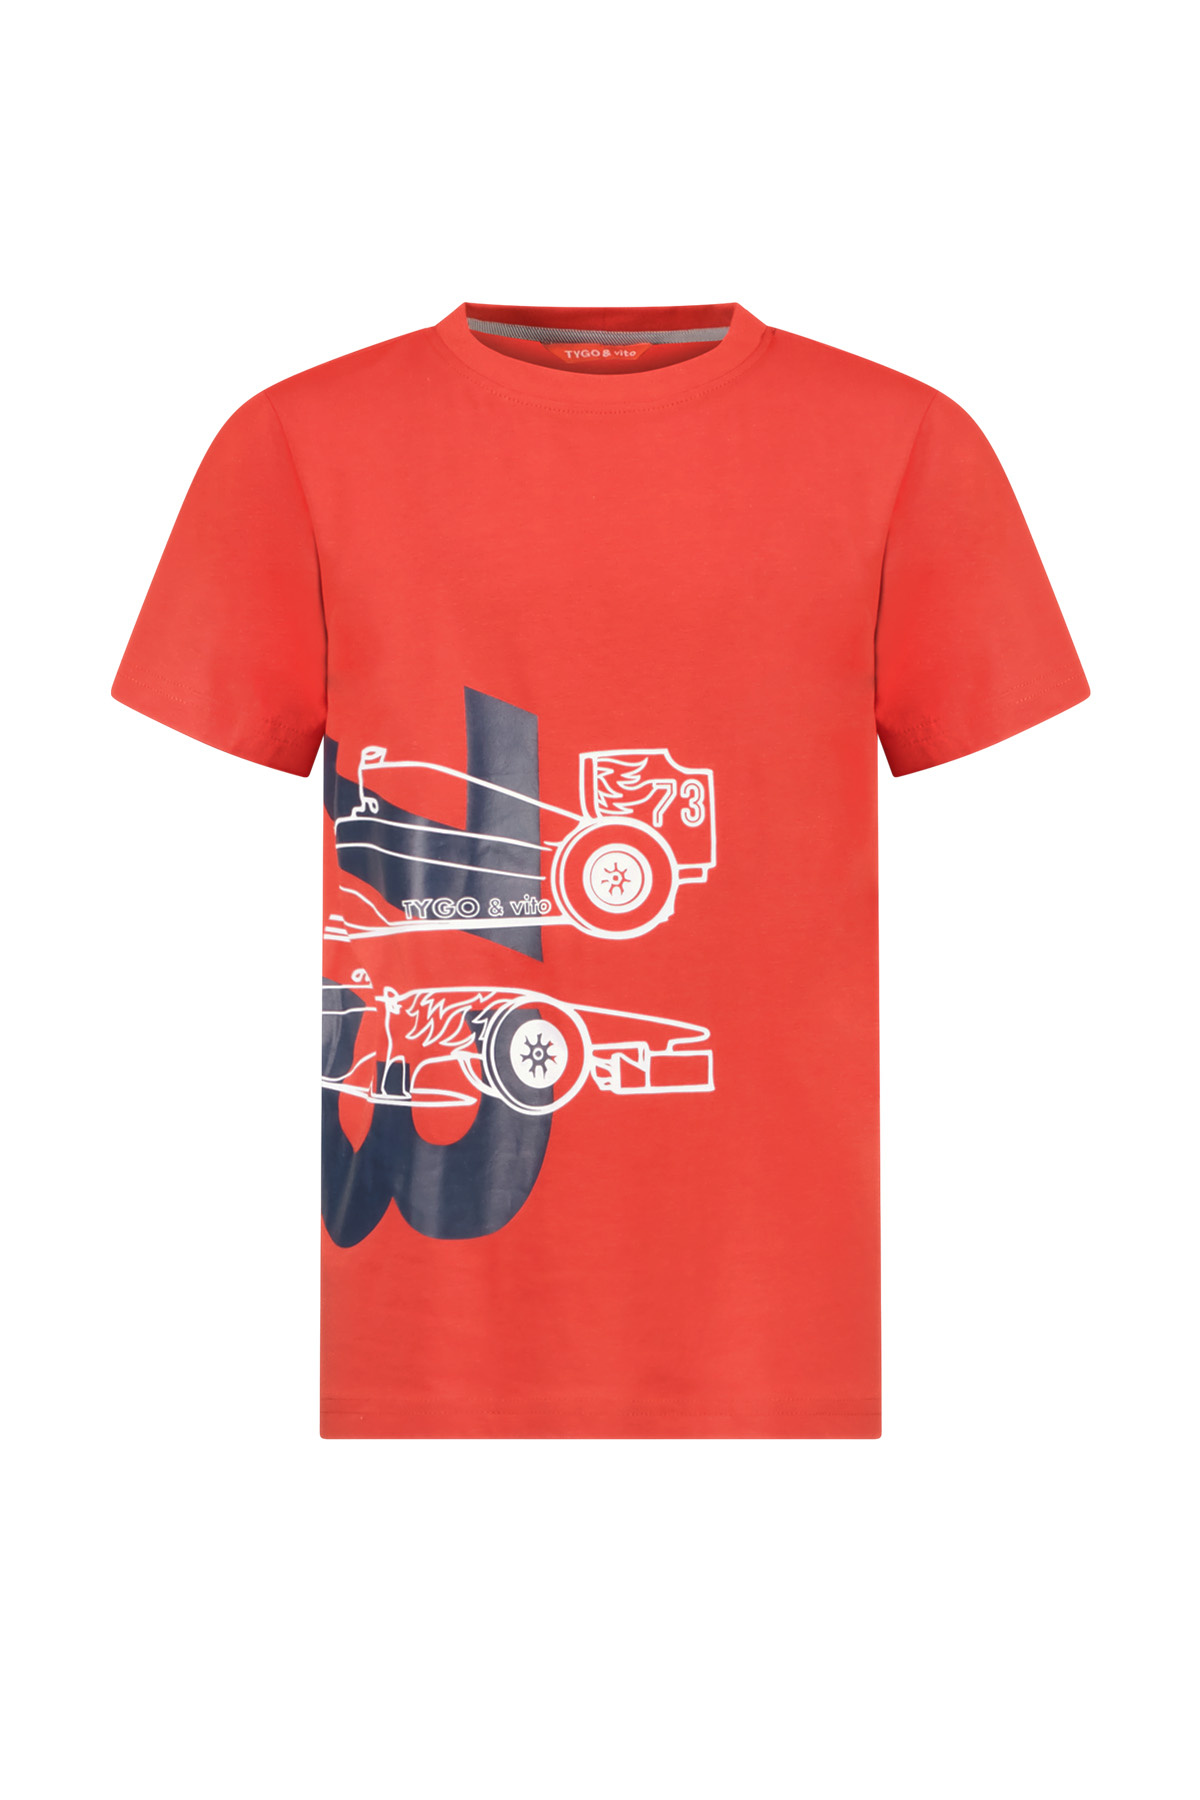 TYGO & vito X402-6427 Jongens T-shirt - Red - Maat 122-128